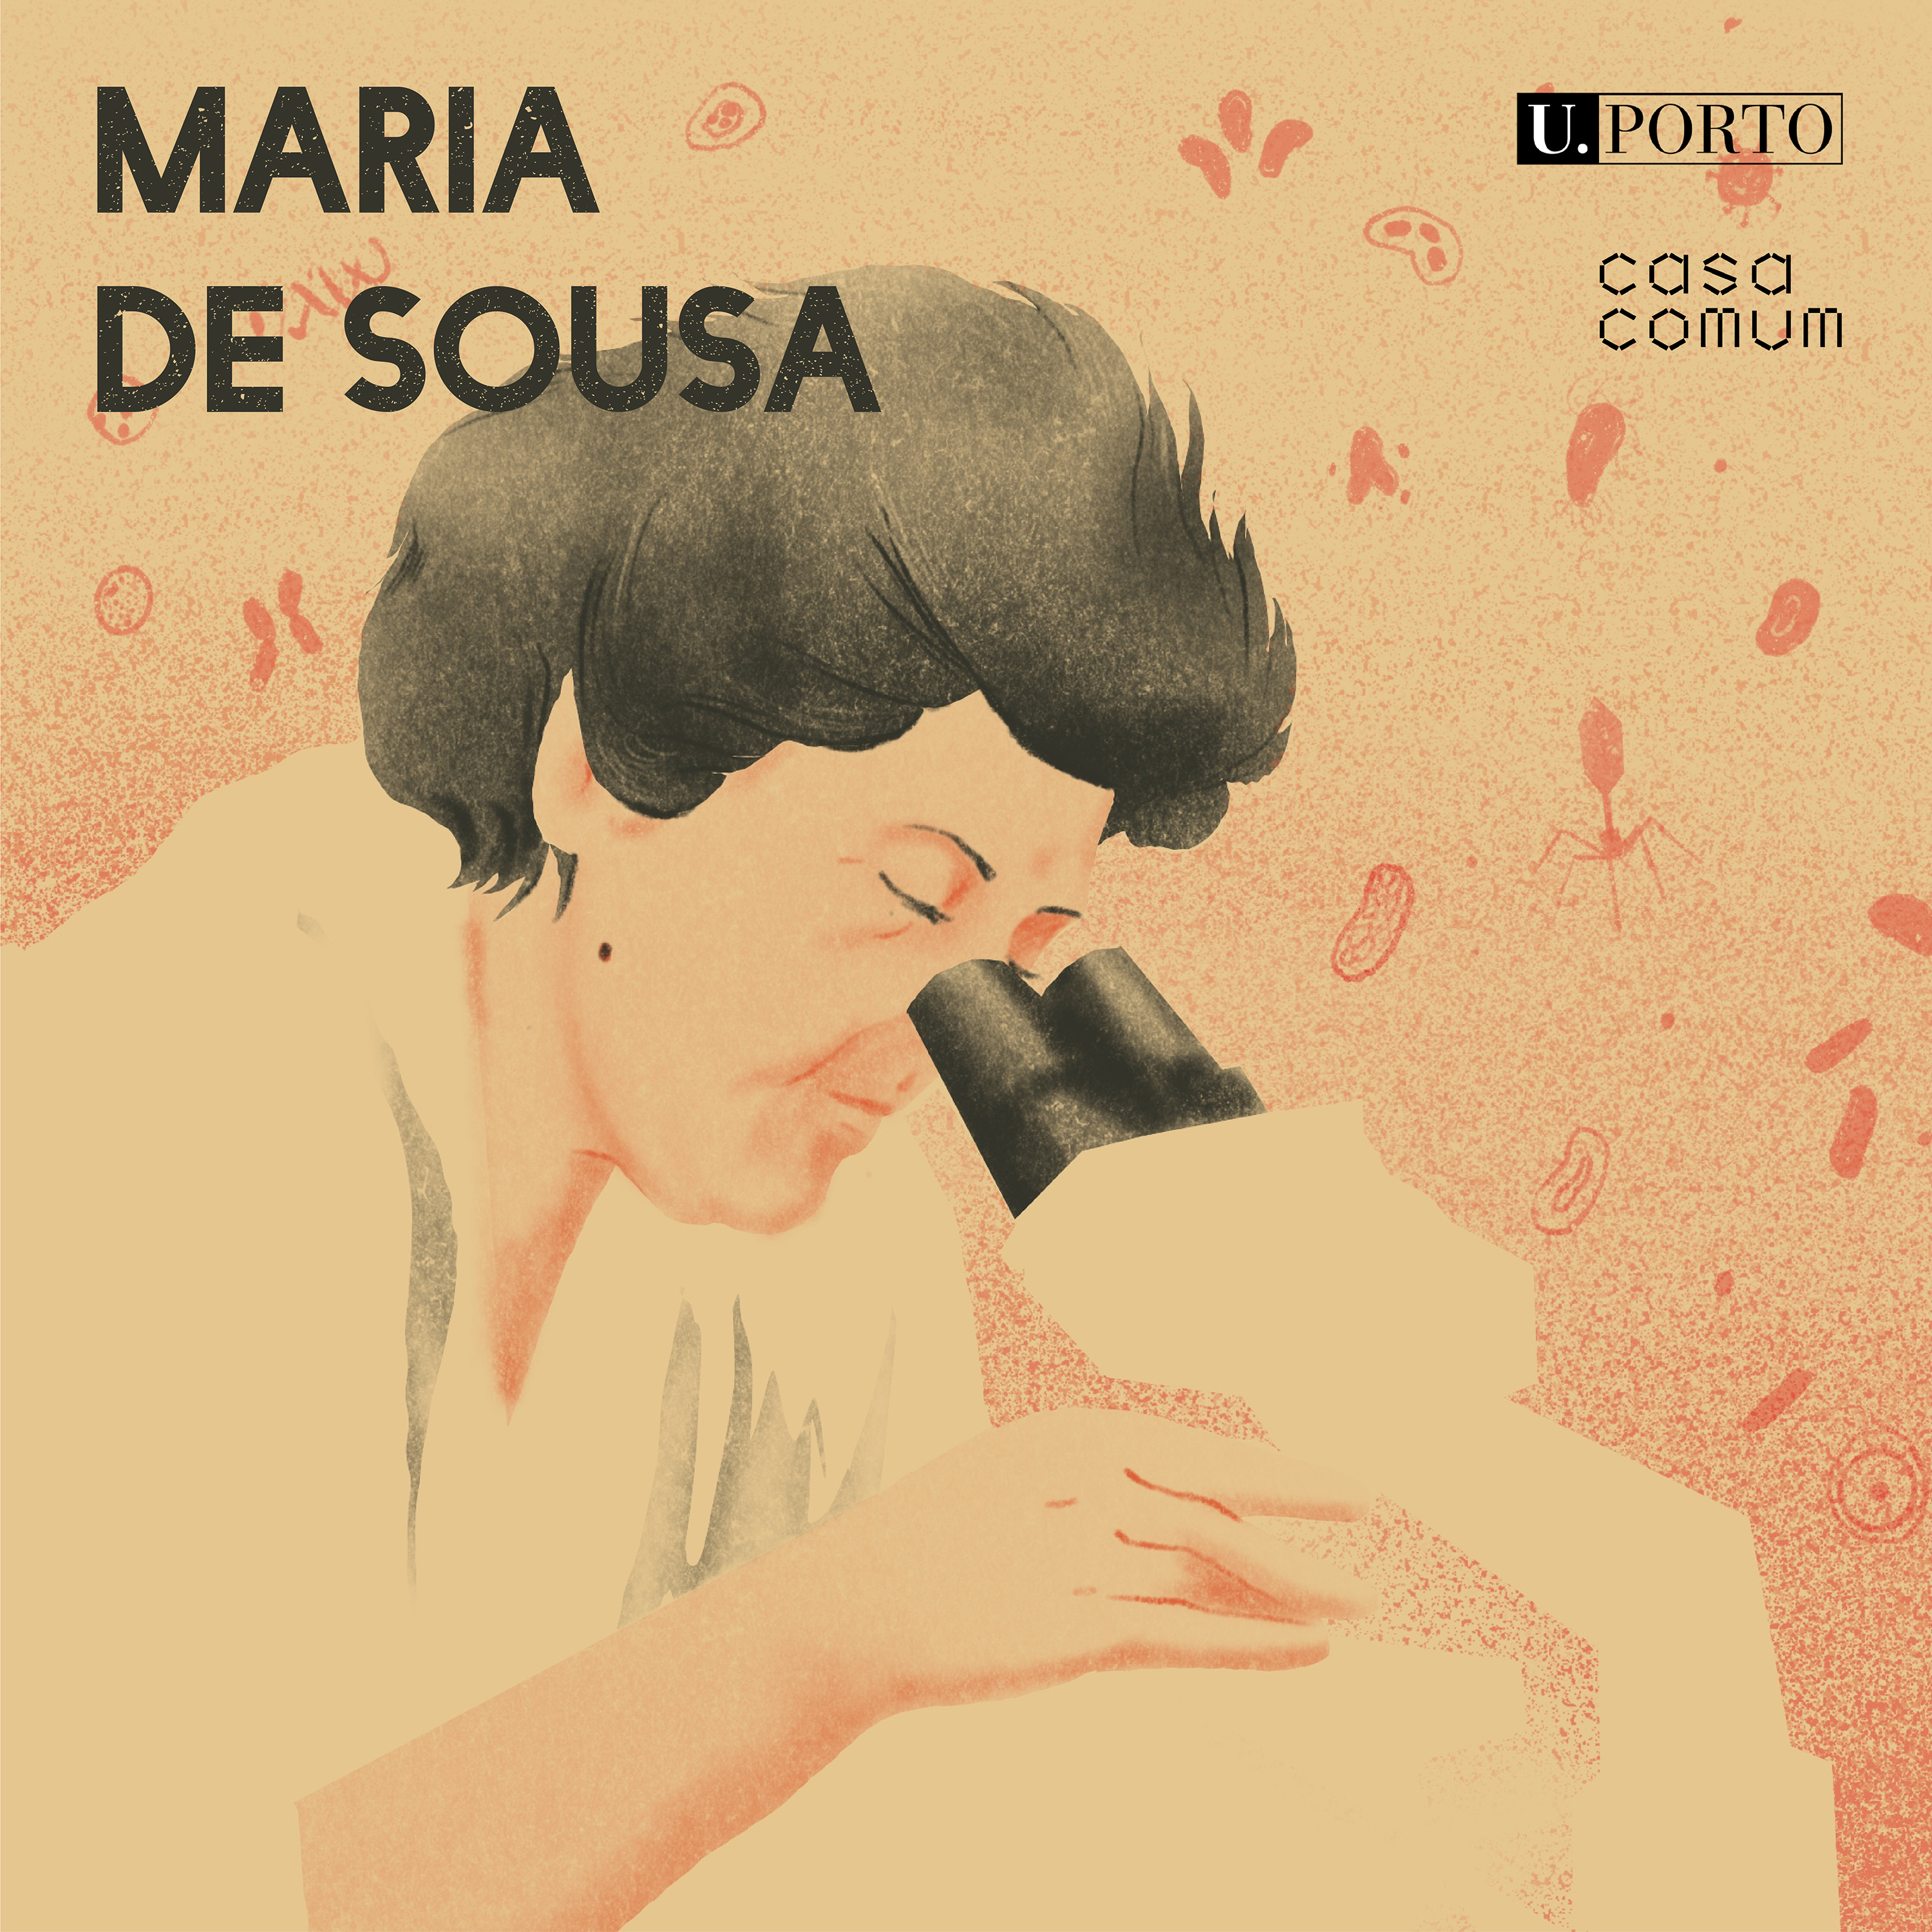 Maria de Sousa